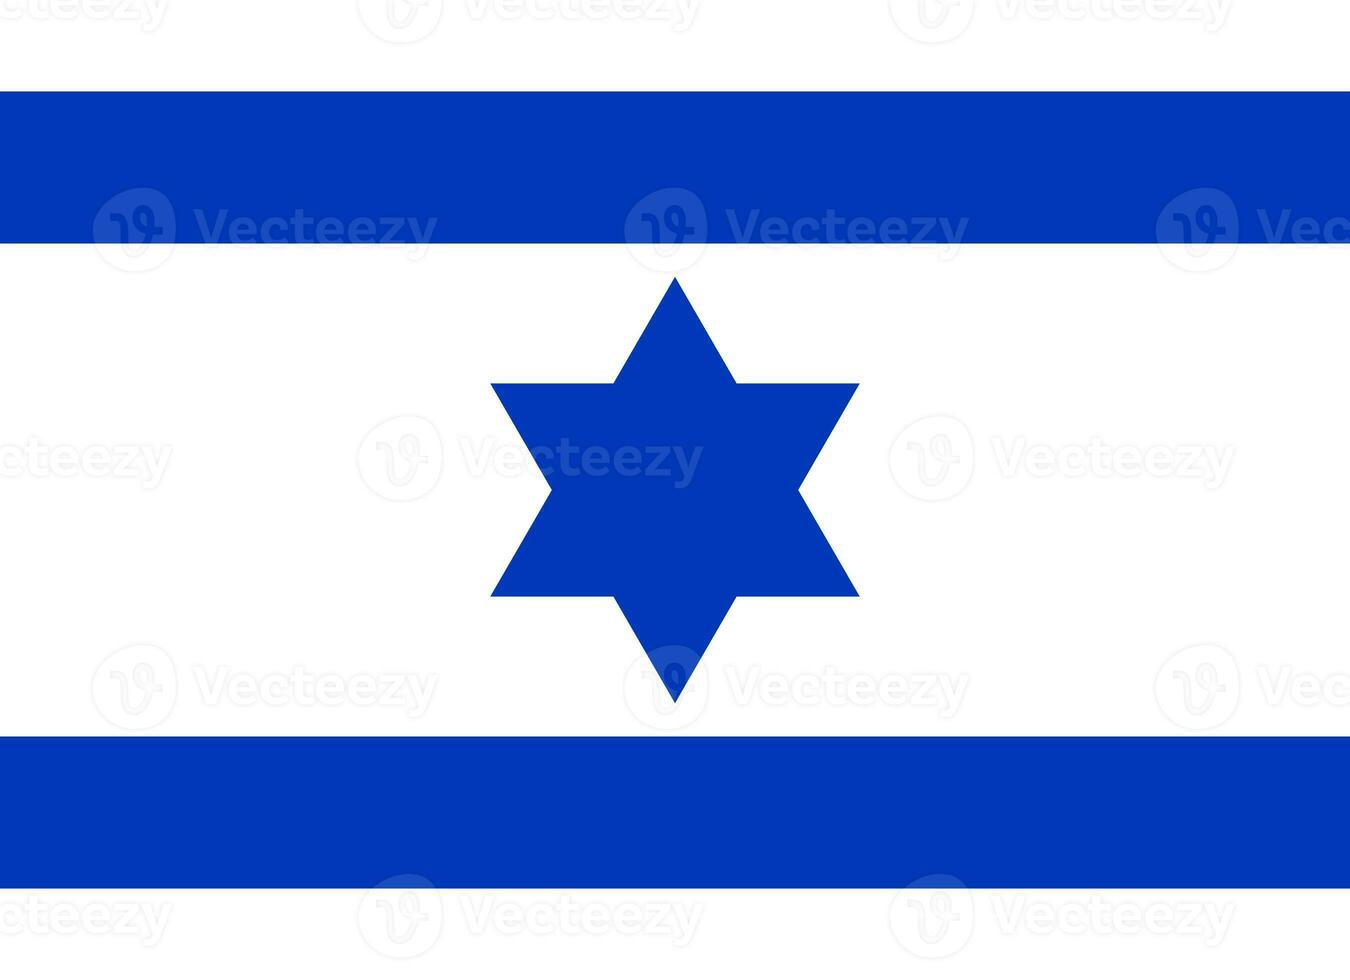 inkt vlag van Israël. symbool van de zege van de Israël verdediging krachten in eilat gedurende de Arabisch-Israëlisch oorlog van 1947-1949. illustratie. foto